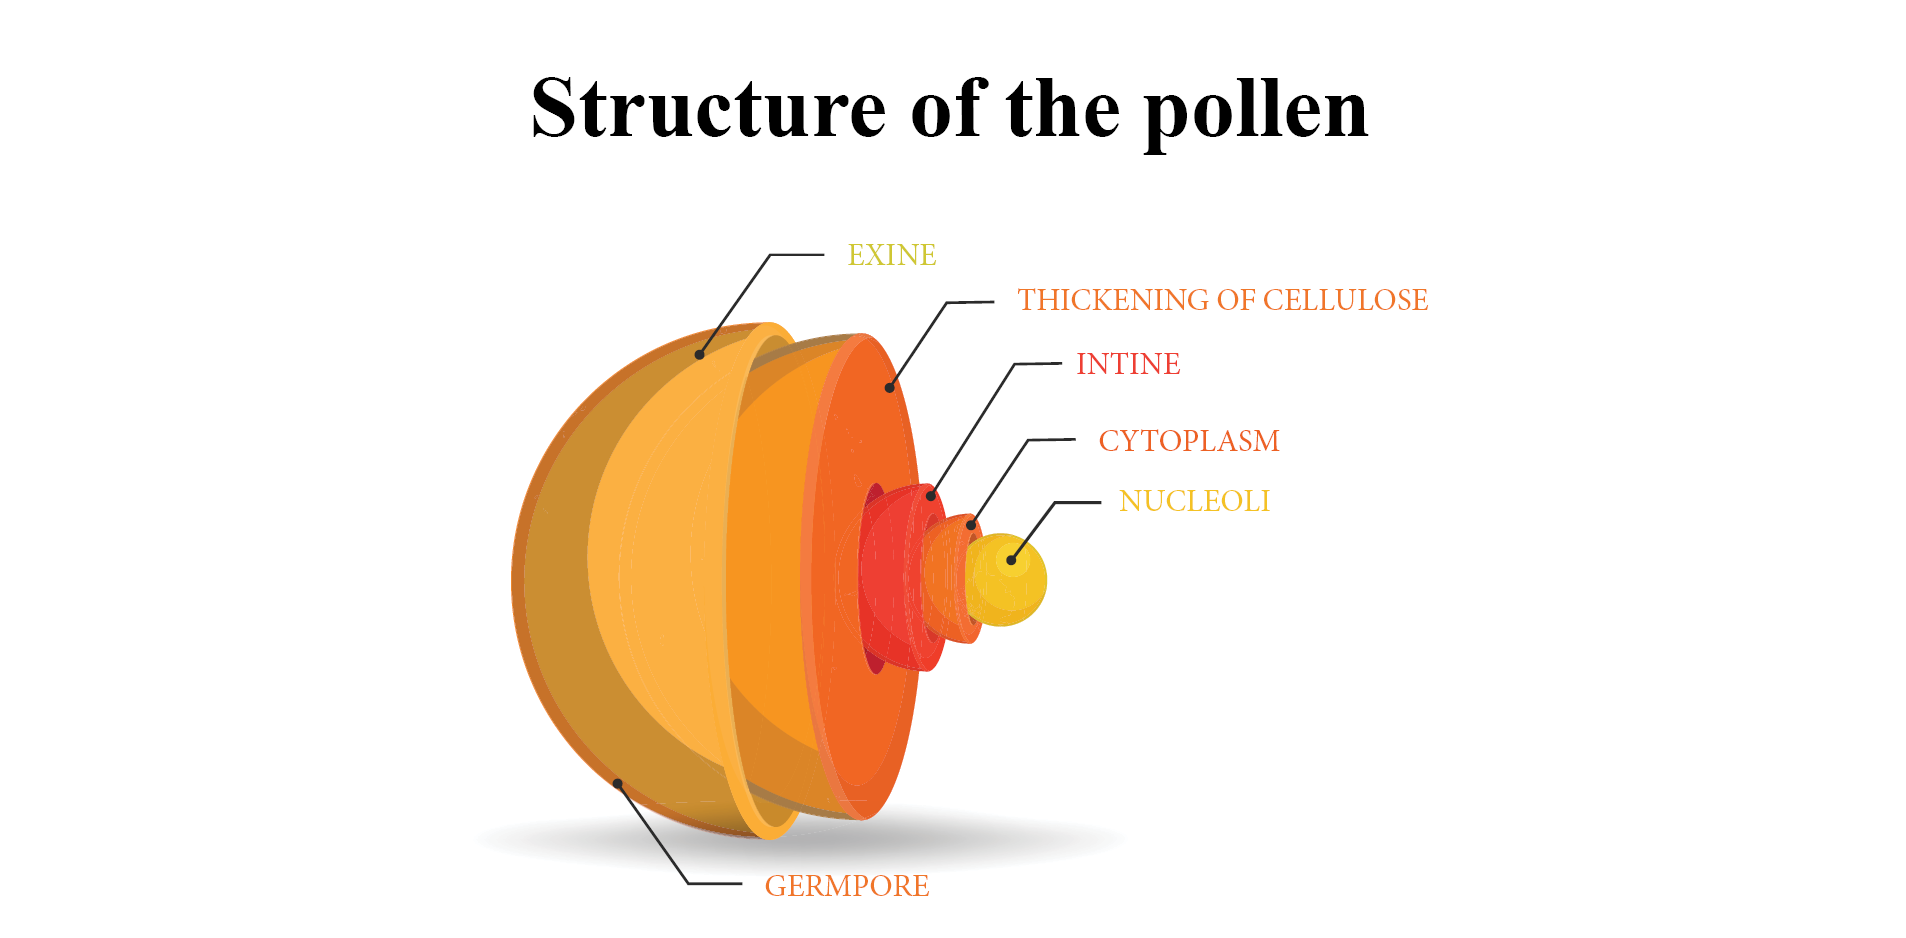 Thành phần cấu tạo của phấn ong.